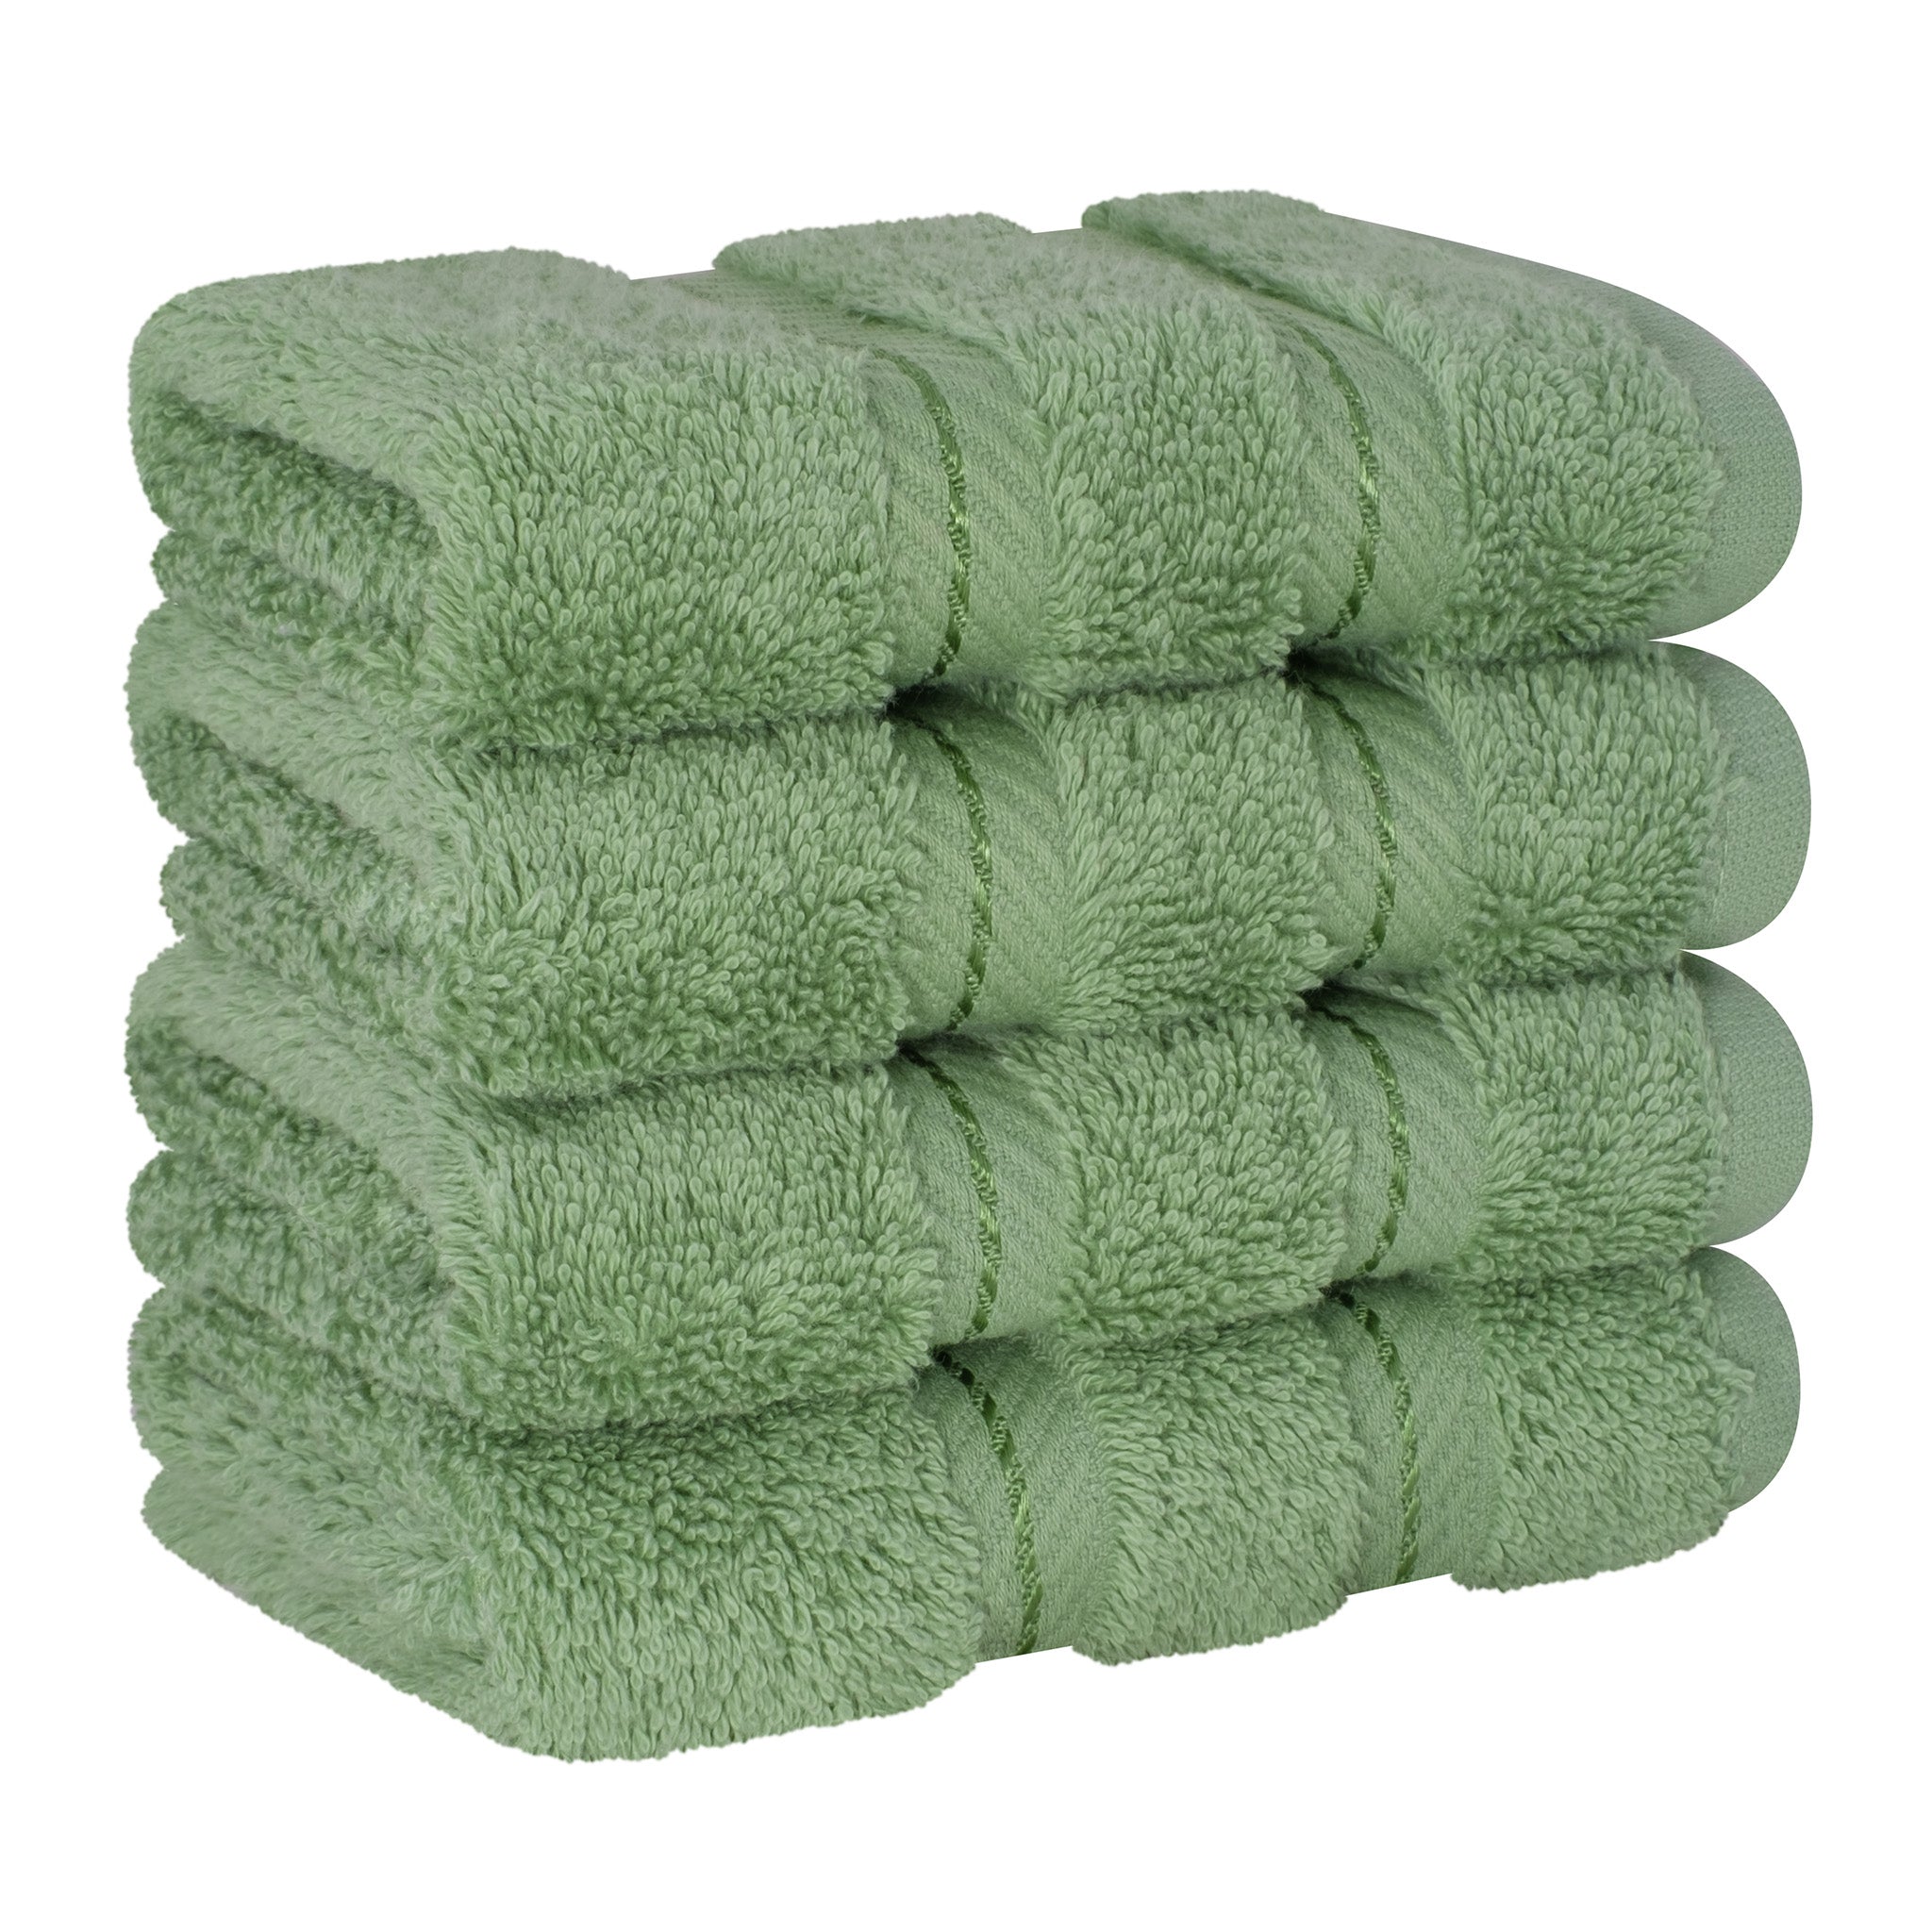  American Soft Linen 100% Turkish Cotton 4 Piece Washcloth Set - Wholesale - sage-green-6